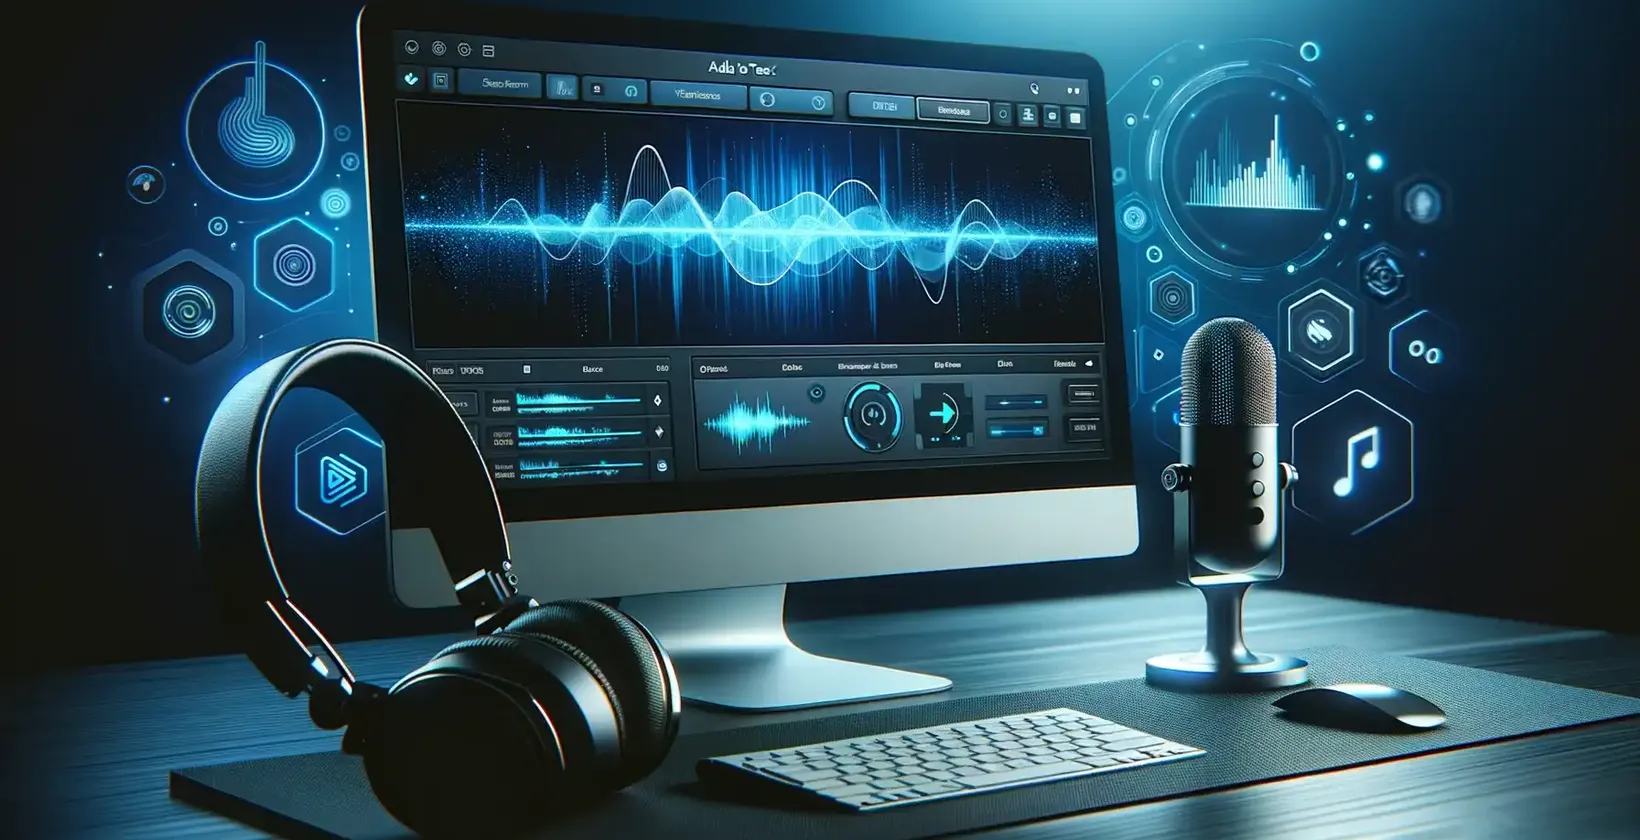 Moderná zvuková pracovná stanica je vybavená počítačovým monitorom, na ktorom sa zobrazujú zložité zvukové krivky a ovládacie prvky na úpravu.